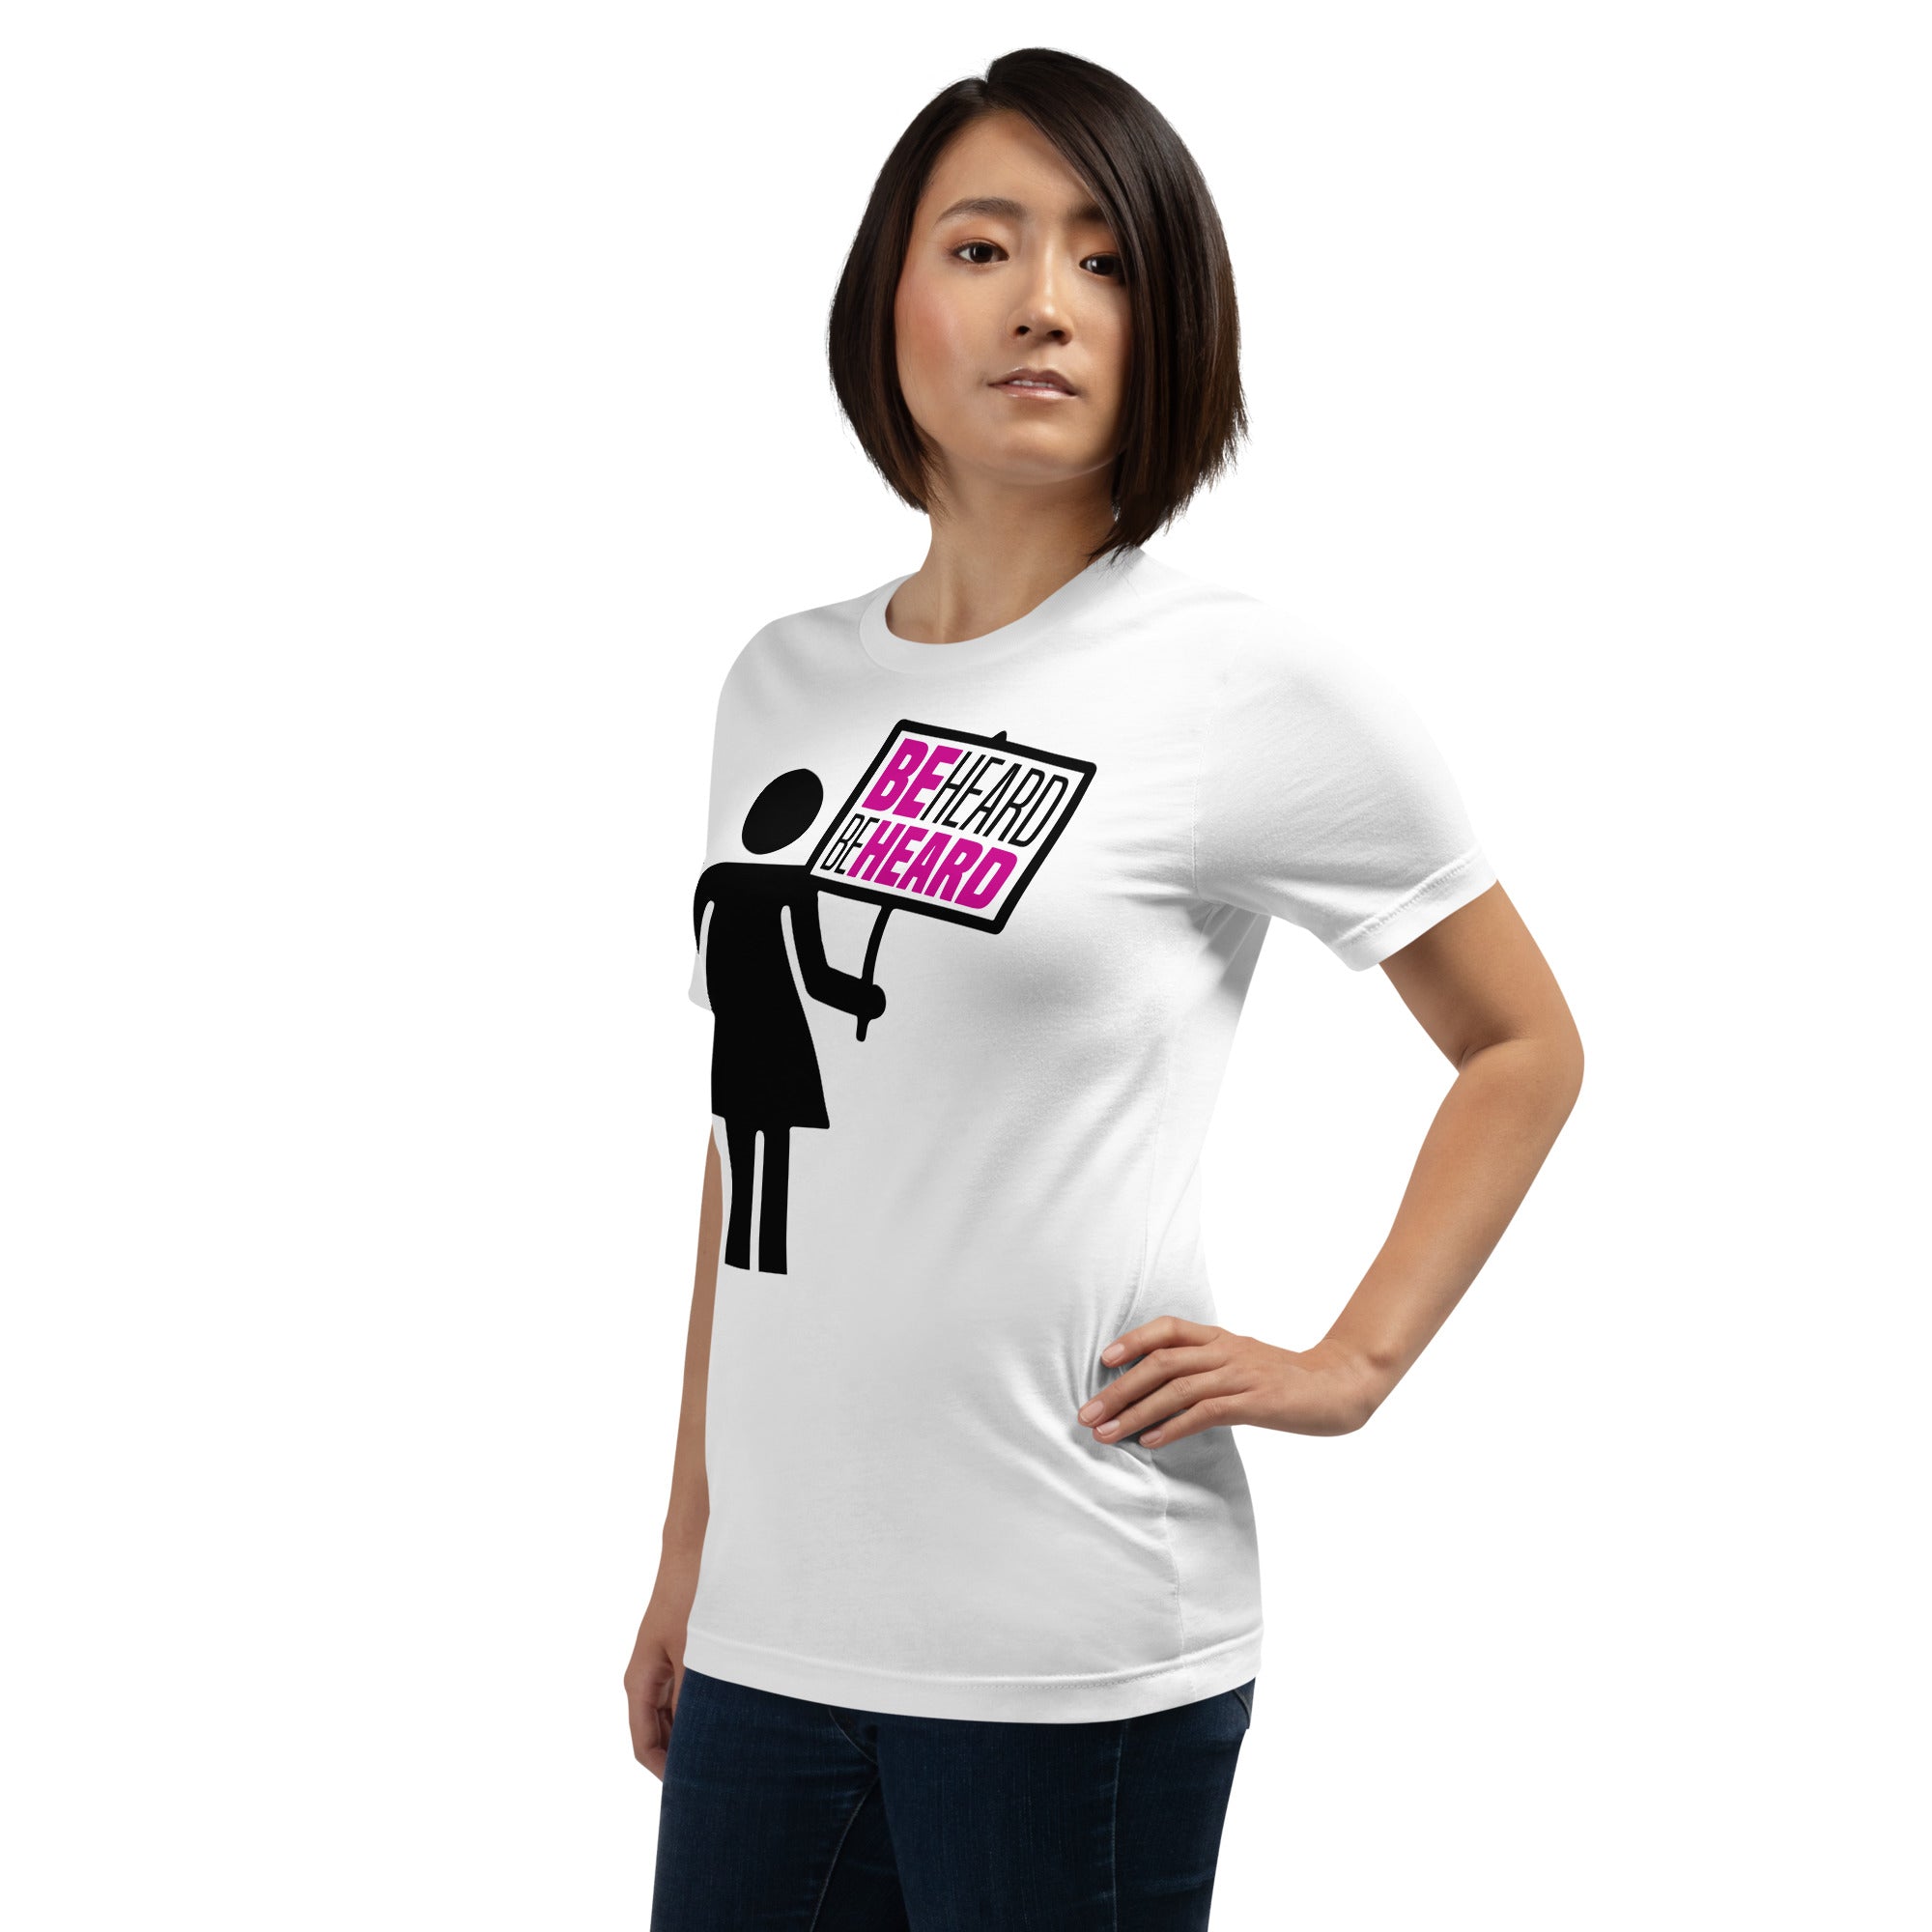 BeHeard "Power of a Woman" Unisex  t-shirt